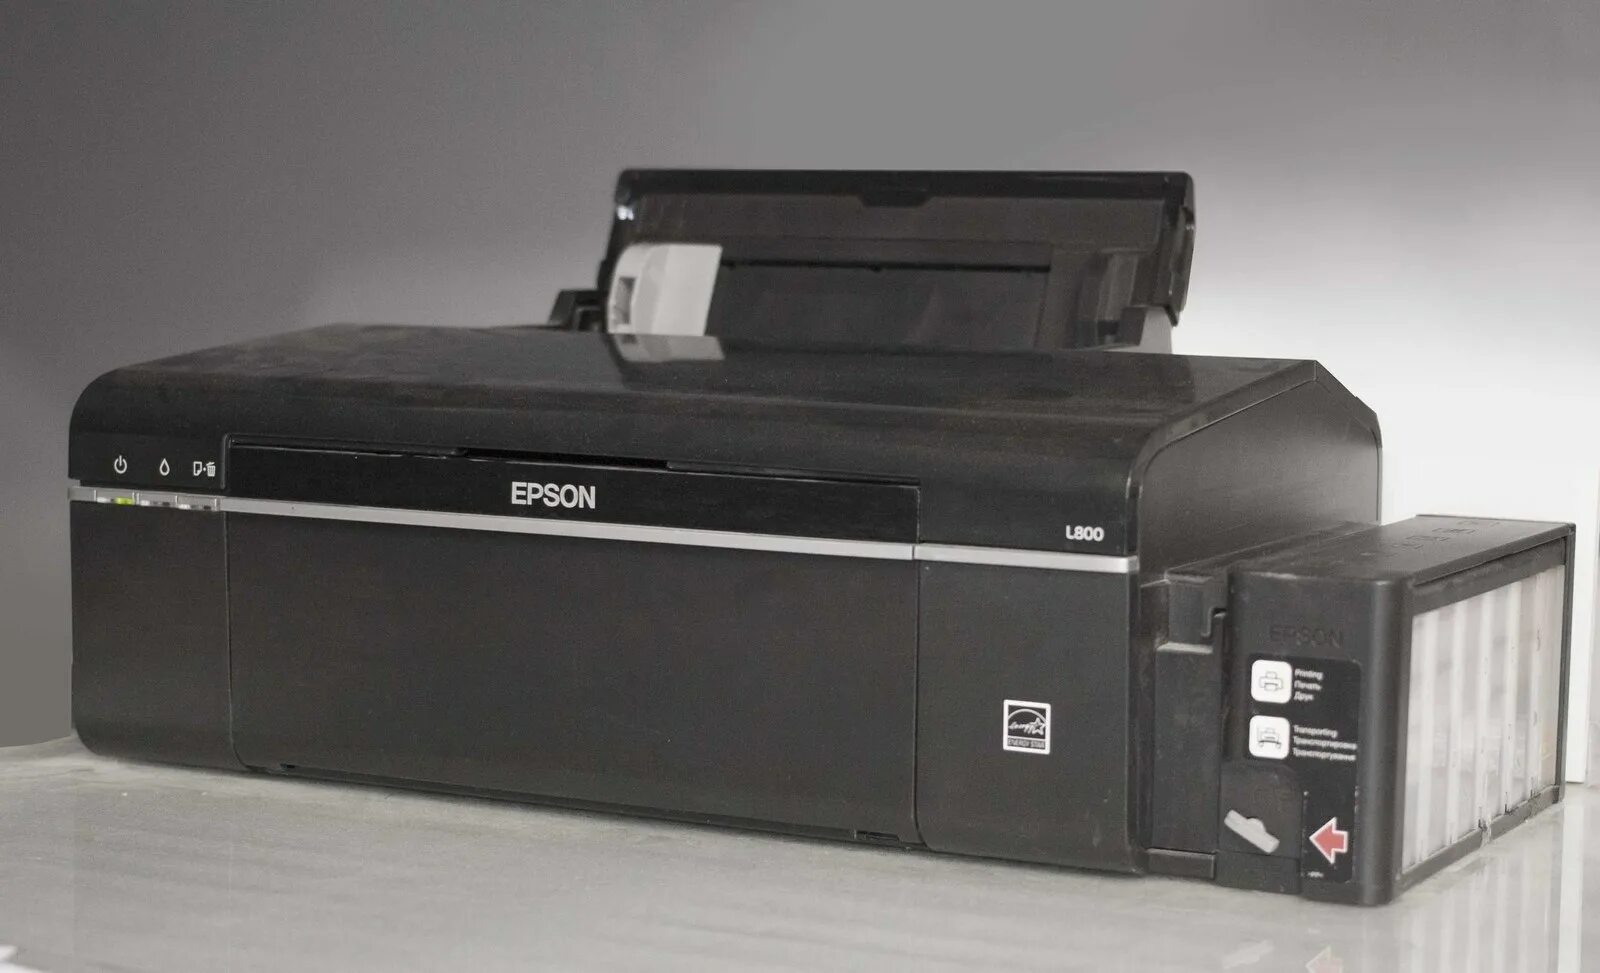 Купить л 800. Принтер Эпсон л800. Epson l800. Струйный принтер Эпсон л800. Струйный принтер Epson l800.